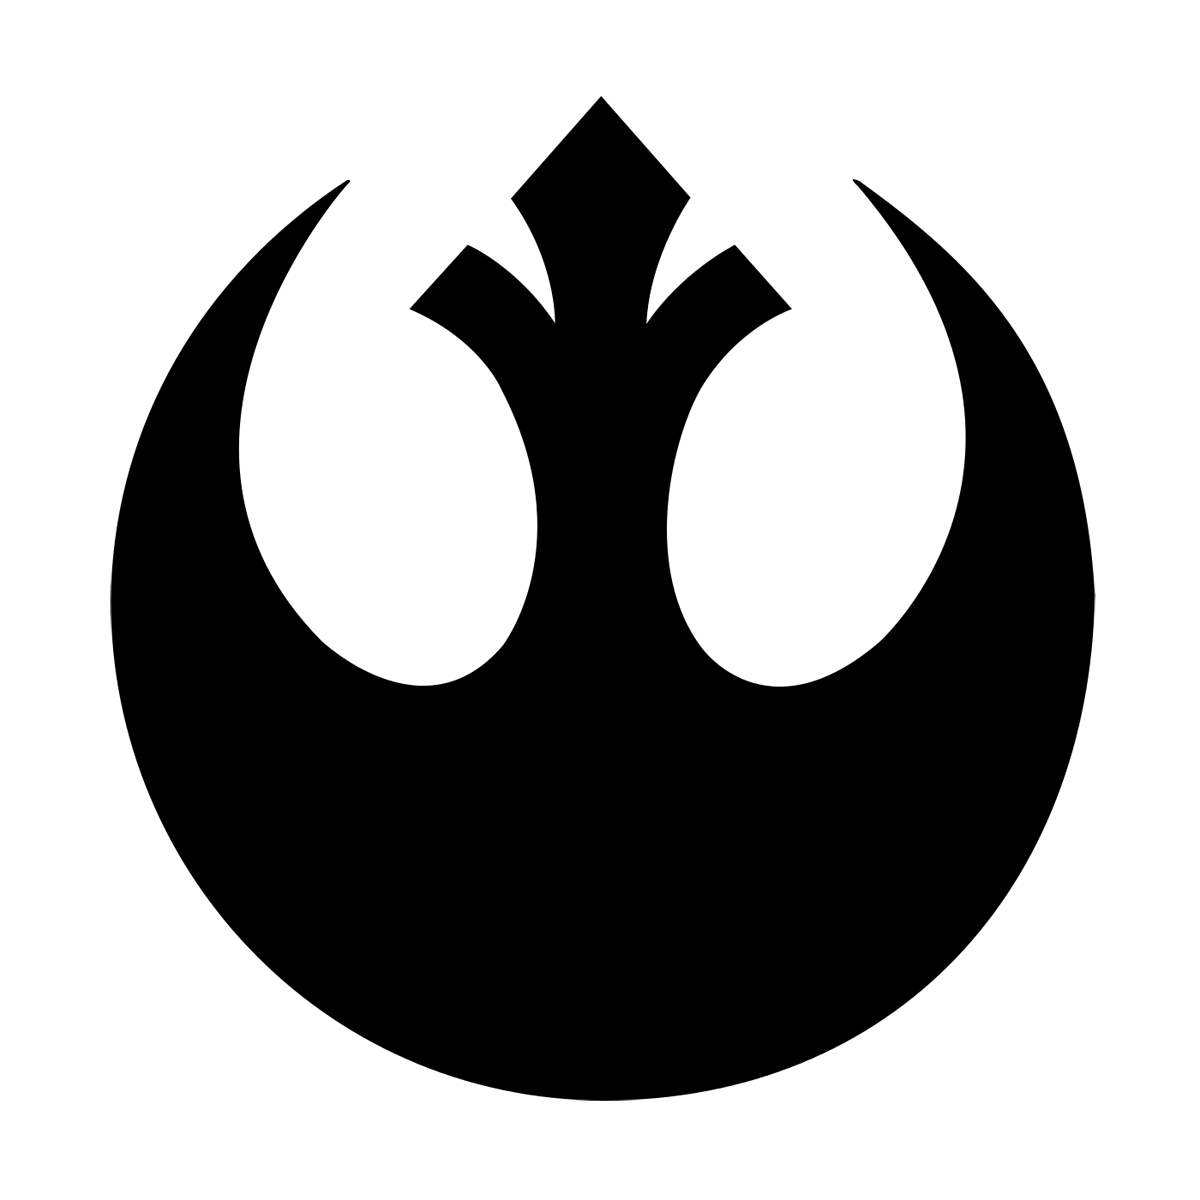 Star Wars Rebel Alliance Emblem PNG